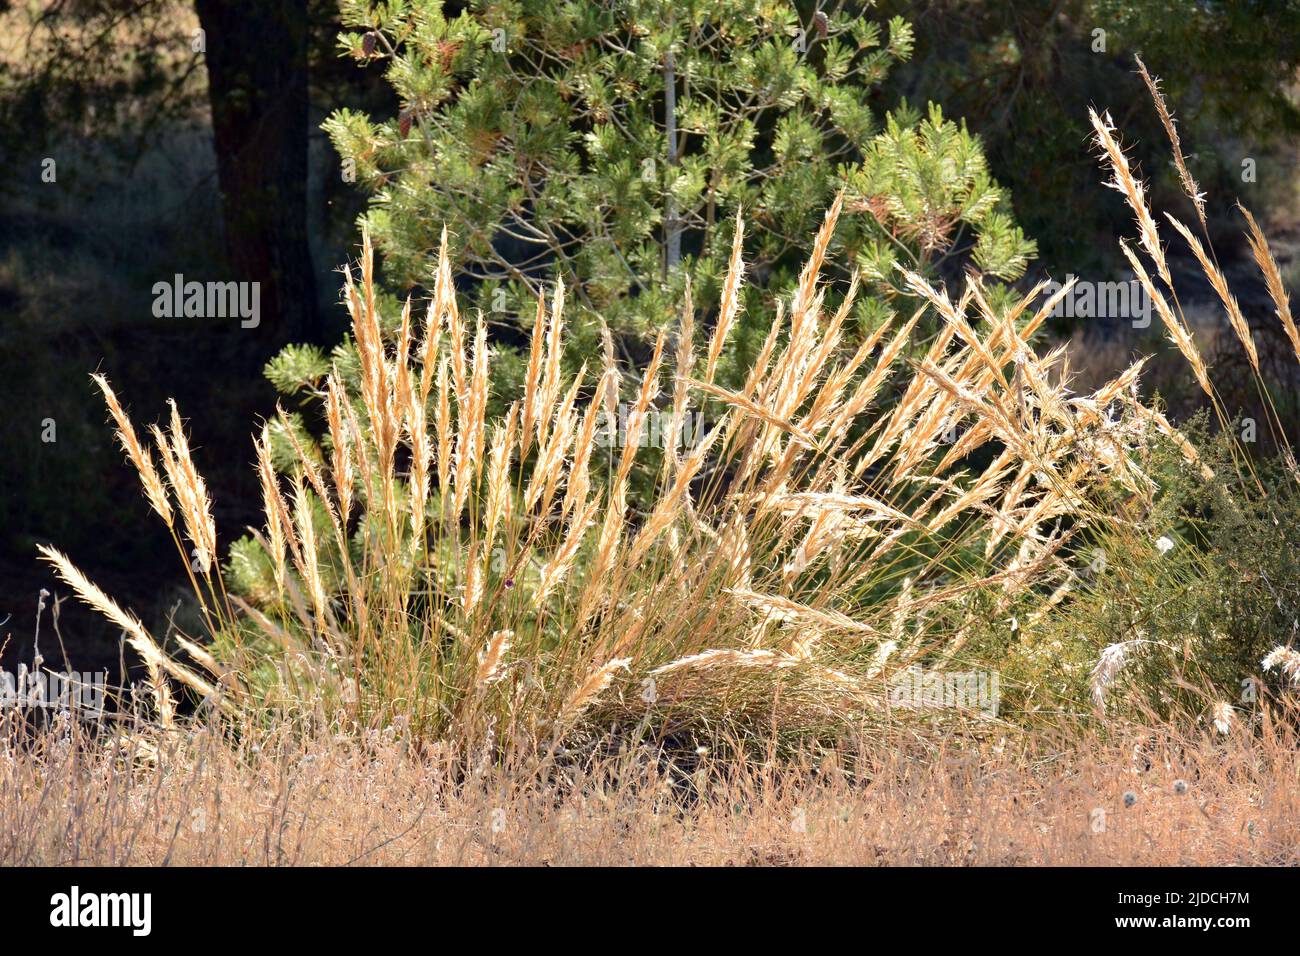 Planta de esparto, macrochloa tenacissima, a principios de verano Stock Photo